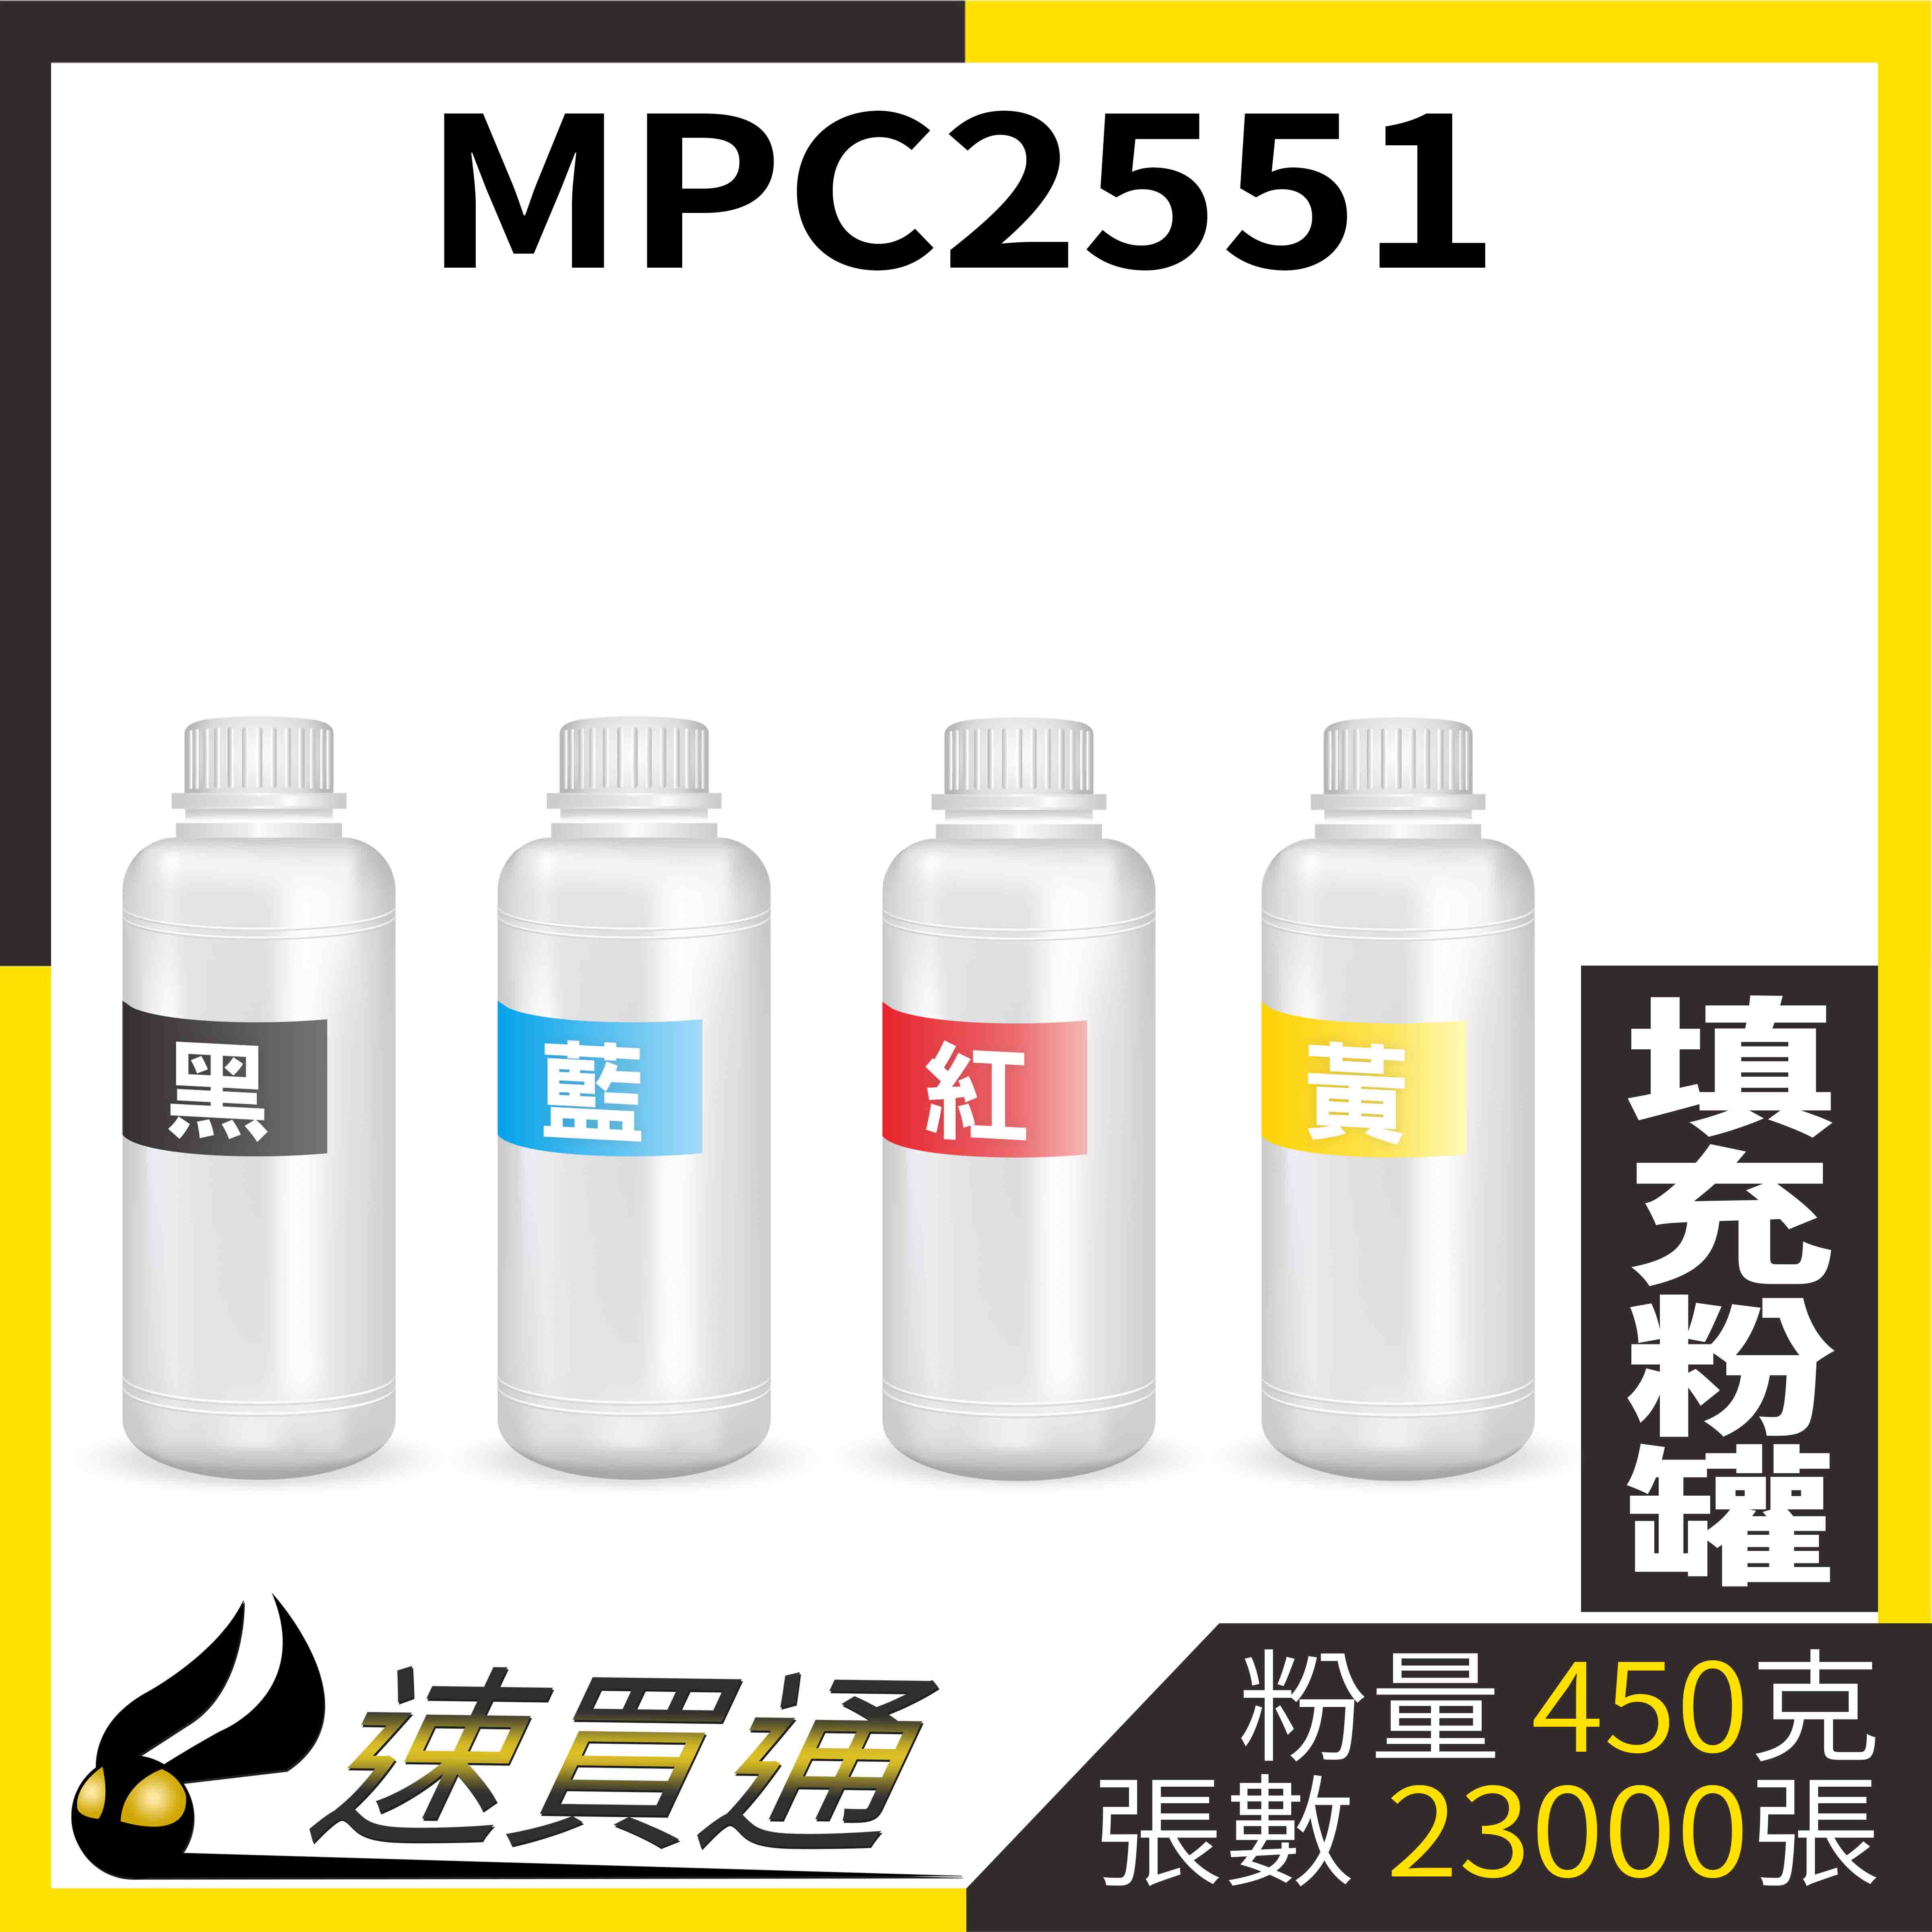 【速買通】RICOH MPC2551 四色綜合 填充式碳粉罐